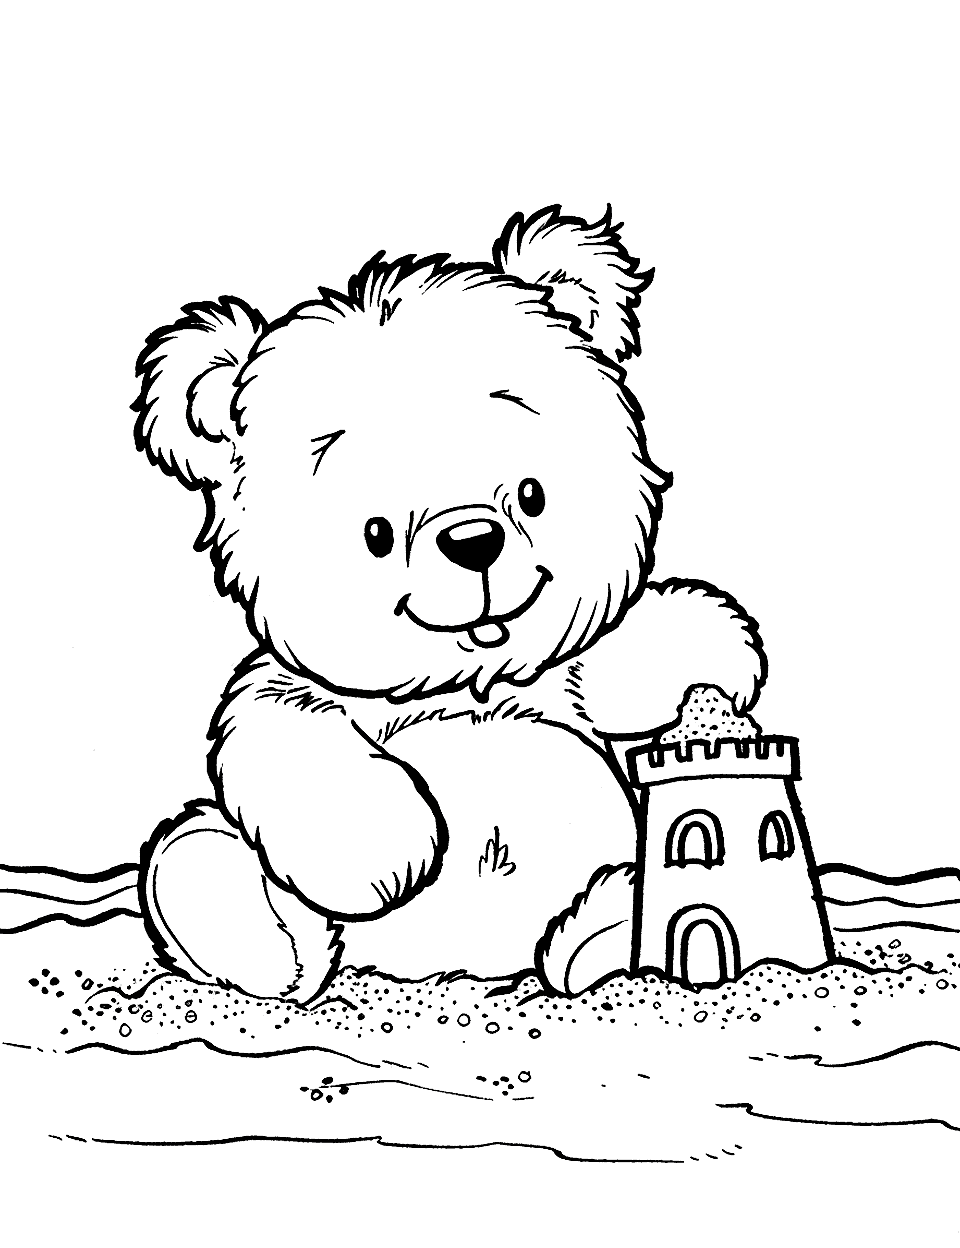 Beach Day Teddy Bear Coloring Page - A teddy bear building a sandcastle on the beach.